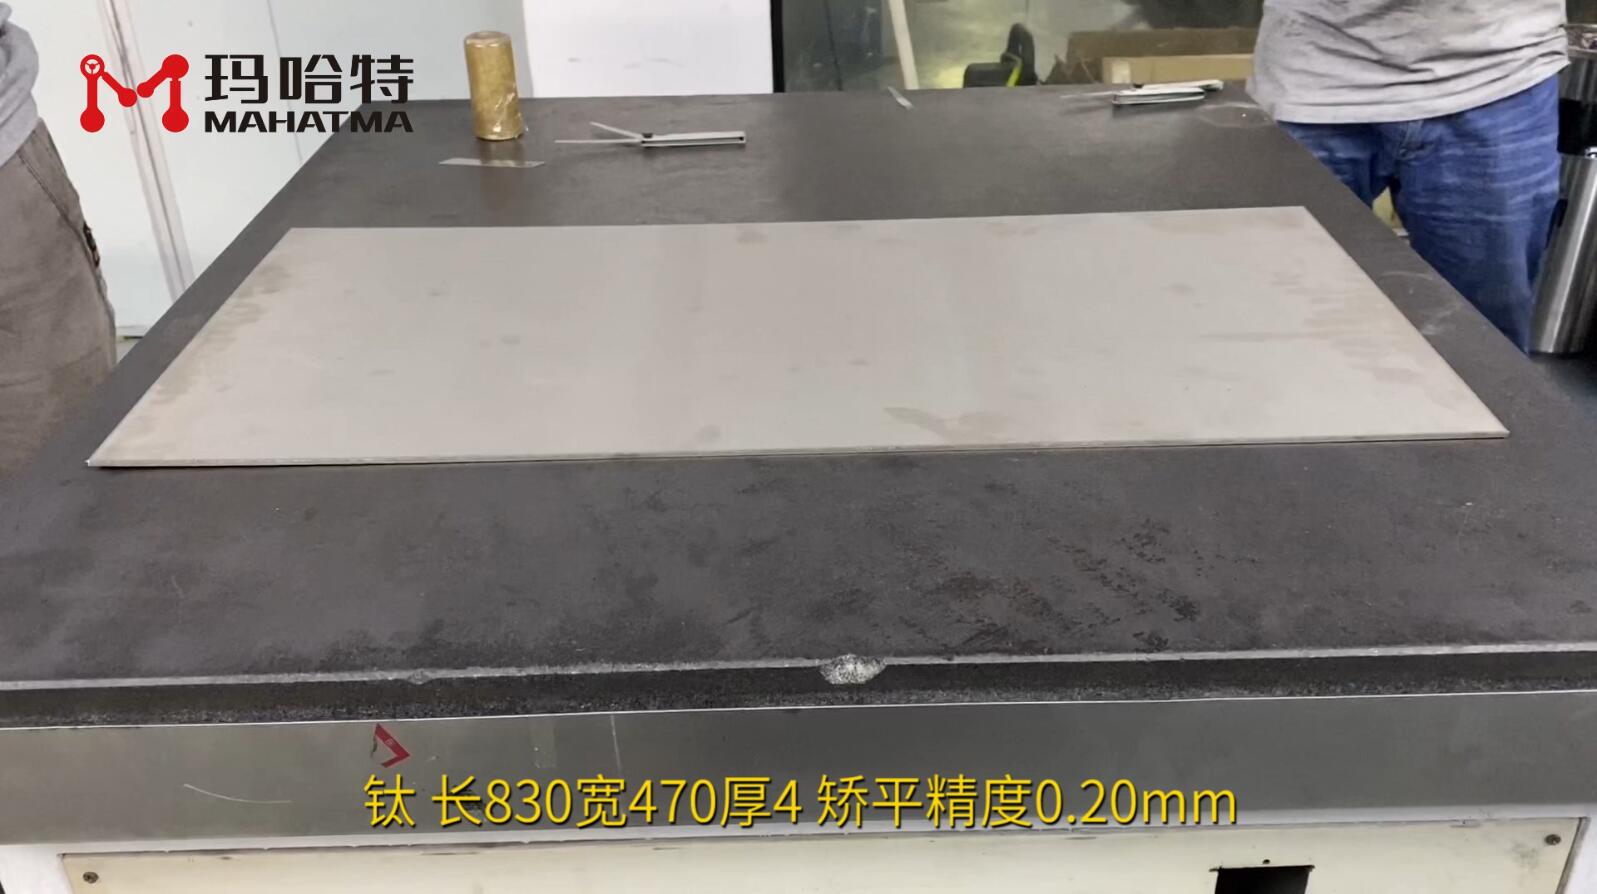 钛 MHT120-1300 长方形 长830宽470厚4 矫平精度0.20mm